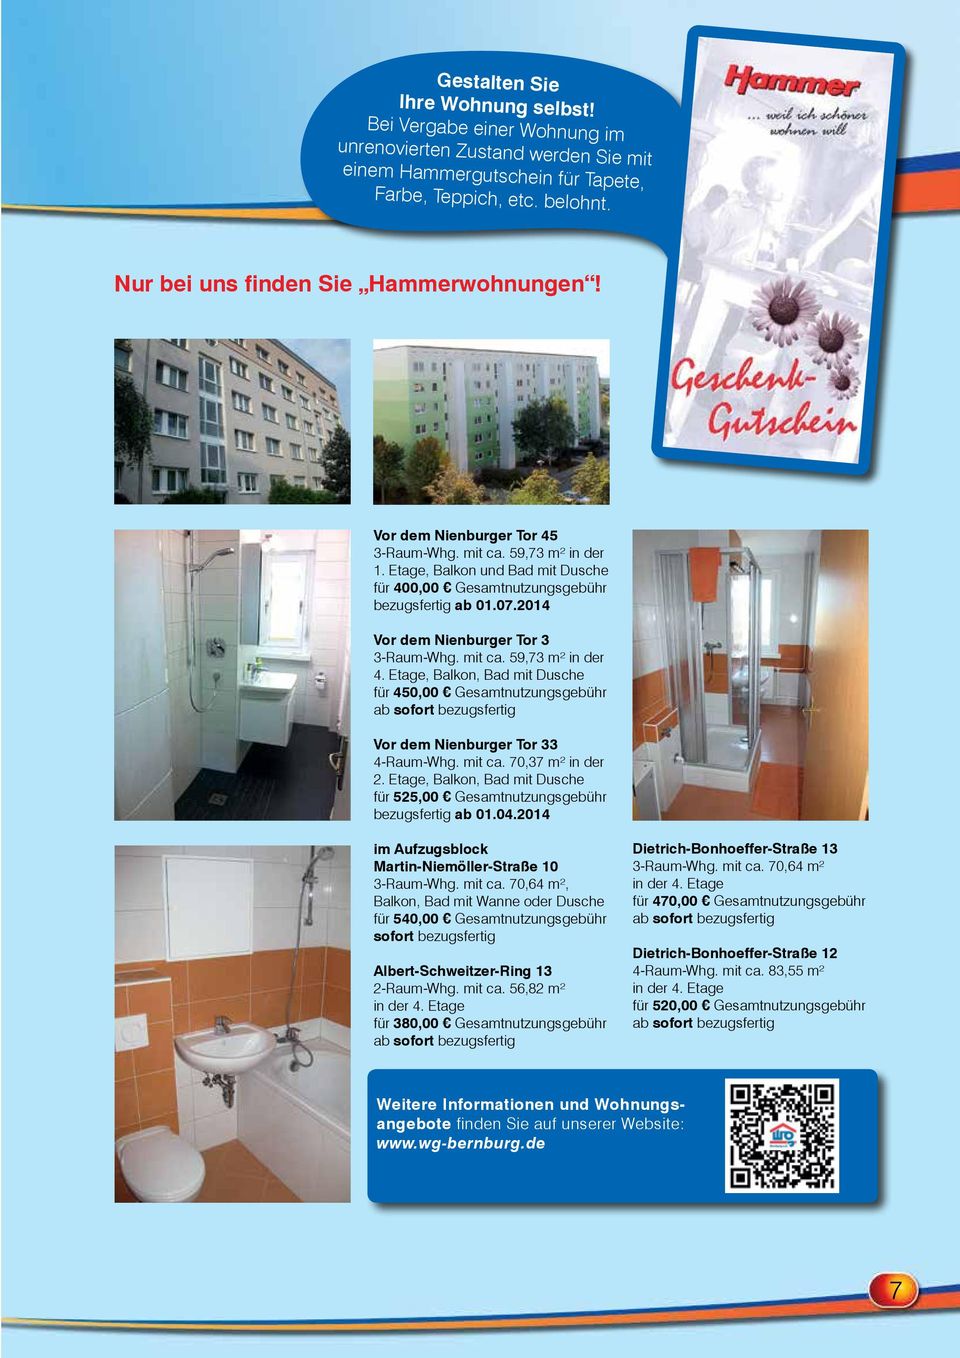 2014 Vor dem Nienburger Tor 3 3-Raum-Whg. mit ca. 59,73 m² in der 4. Etage, Balkon, Bad mit Dusche für 450,00 Gesamtnutzungsgebühr ab sofort bezugsfertig Vor dem Nienburger Tor 33 4-Raum-Whg. mit ca. 70,37 m² in der 2.